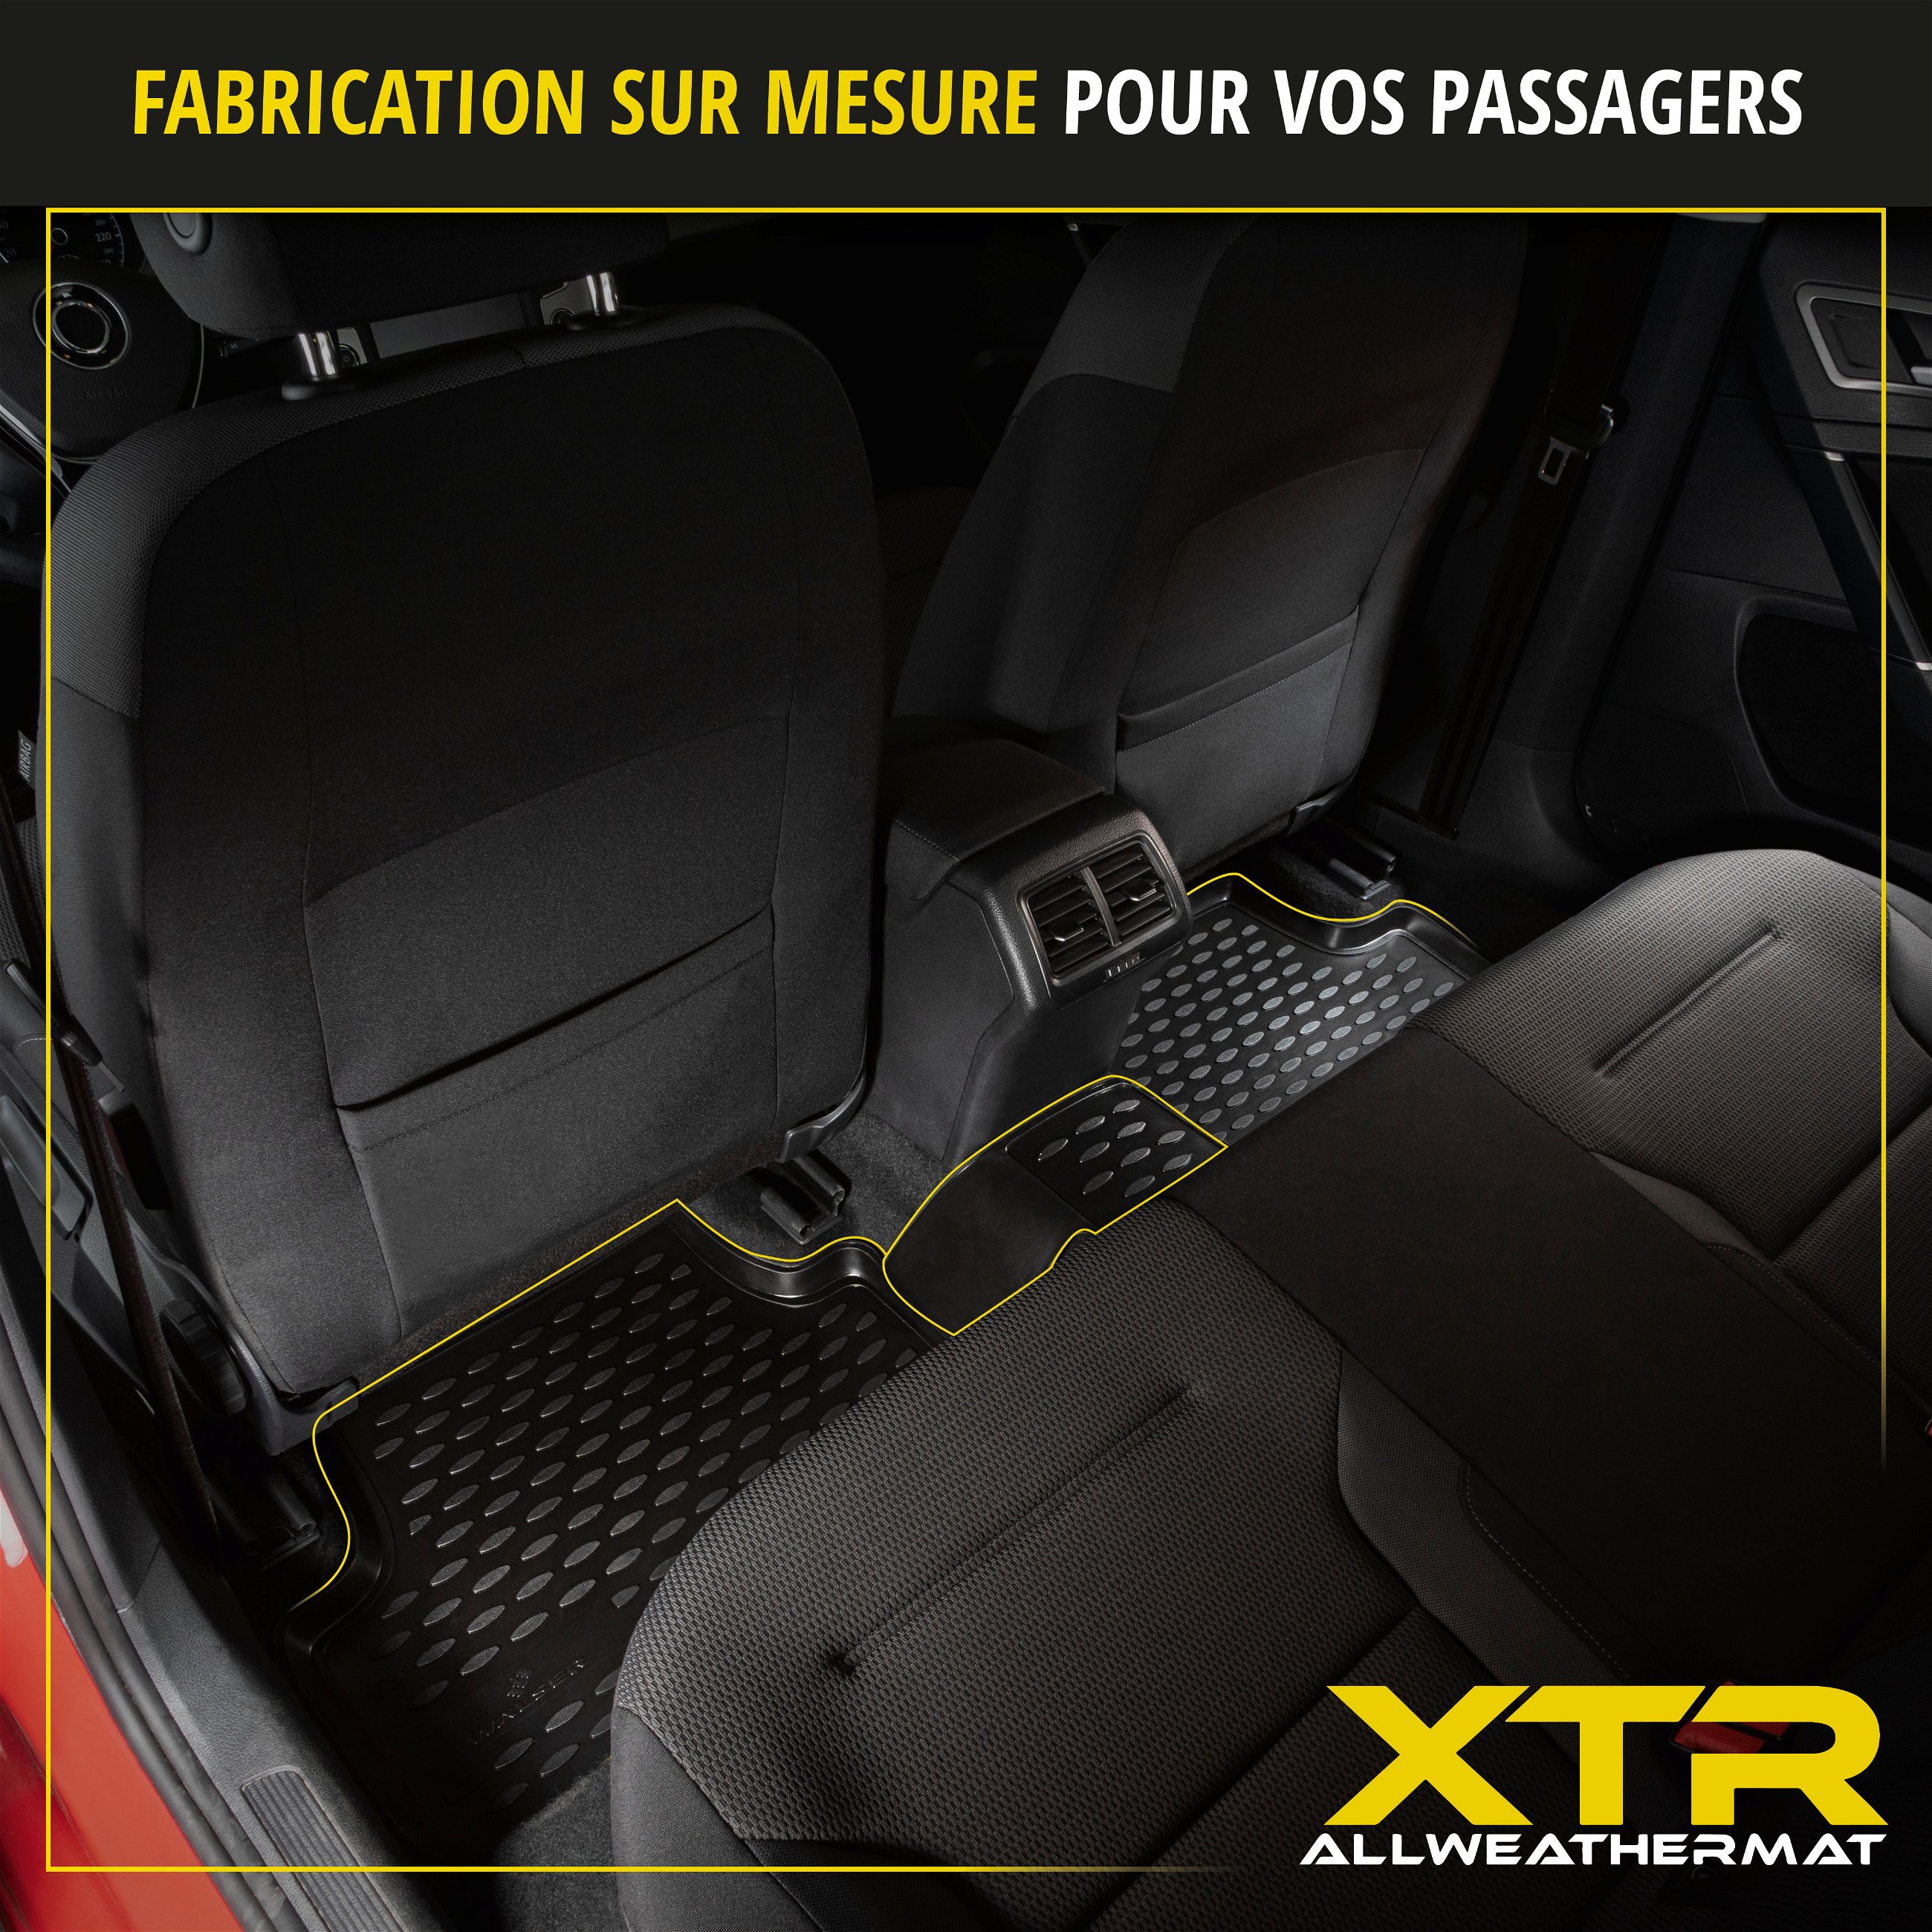 Tapis en caoutchouc XTR pour Audi A4 08/2007 - 12/2015, A4 Avant 11/2007 - 12/2015, A4 Allroad 04/2009 - 05/2016